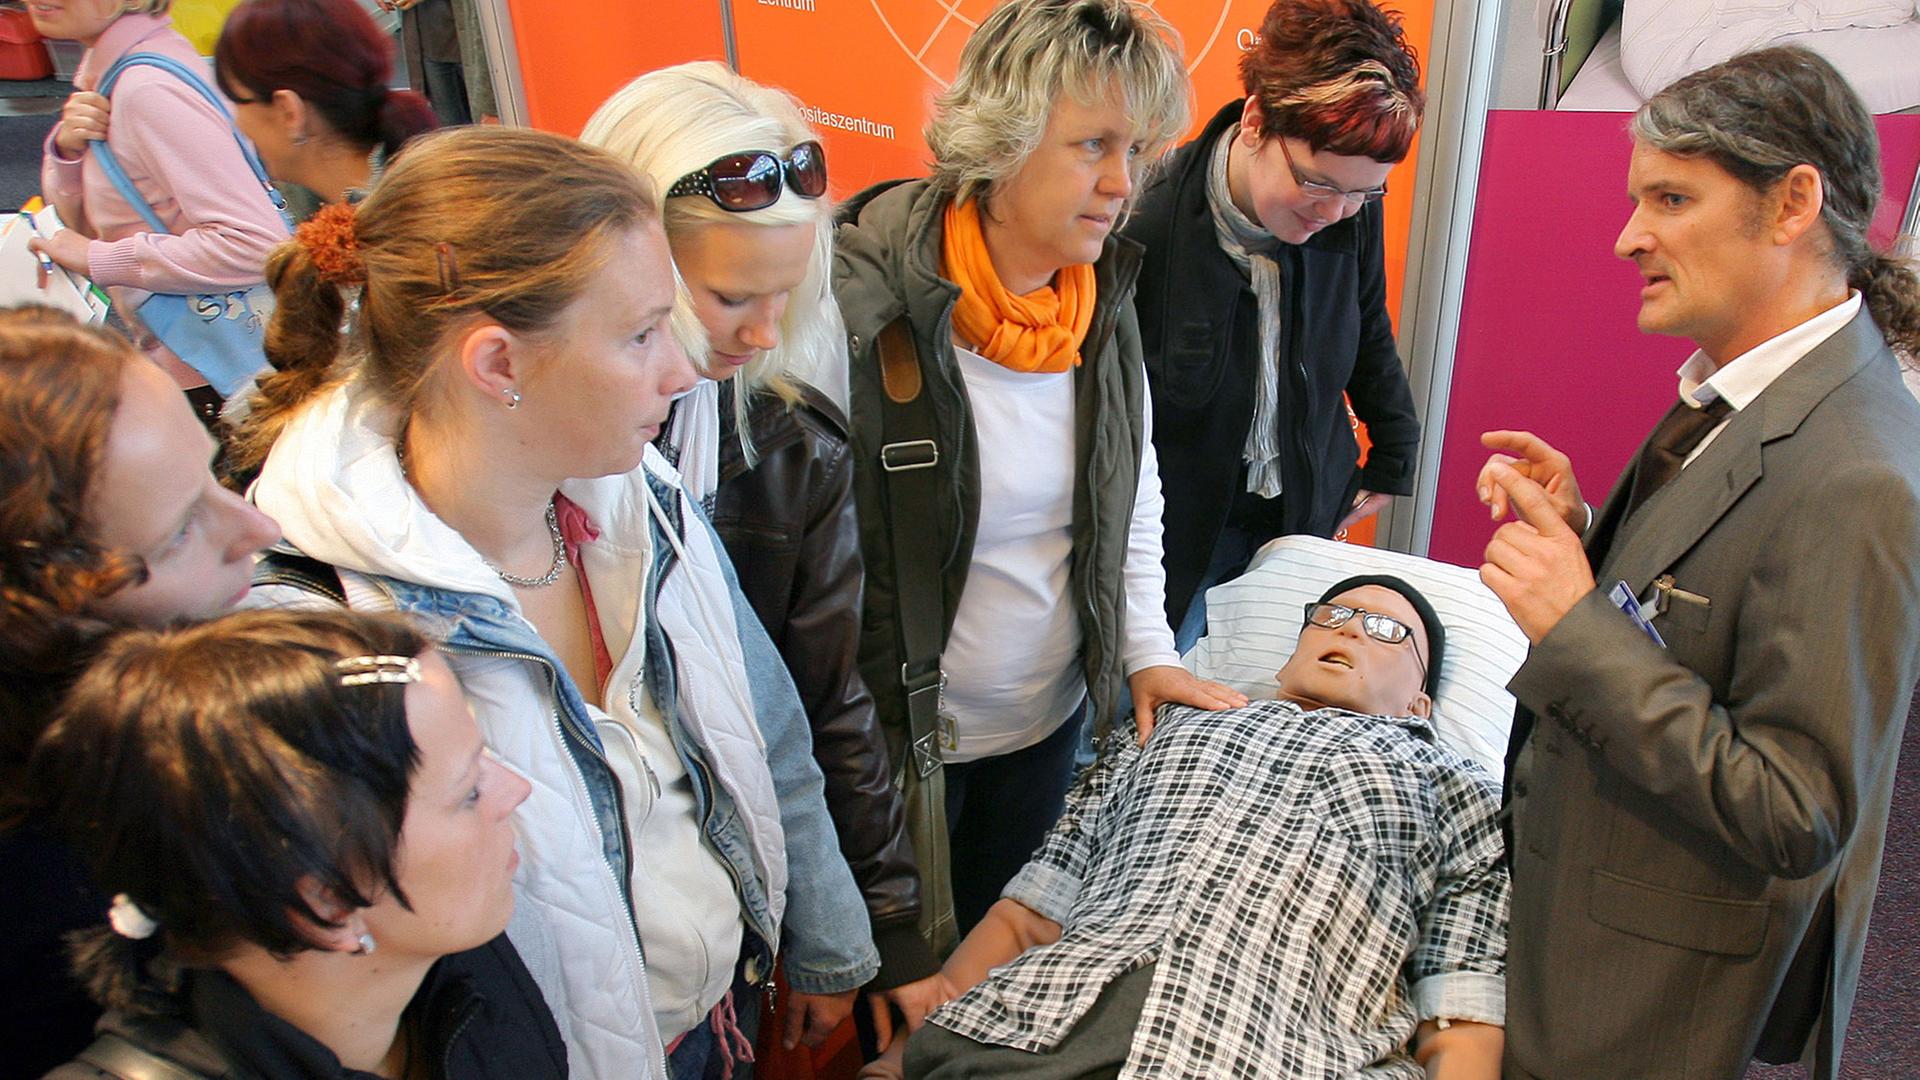 Auf der Landesgesundheitsmesse VitaAktiMed in Rostock demonstriert Oberarzt Gernot Rücker (r) vom Universitätsklinikum Rostock den Besuchern den Patientensimulator "Igor".